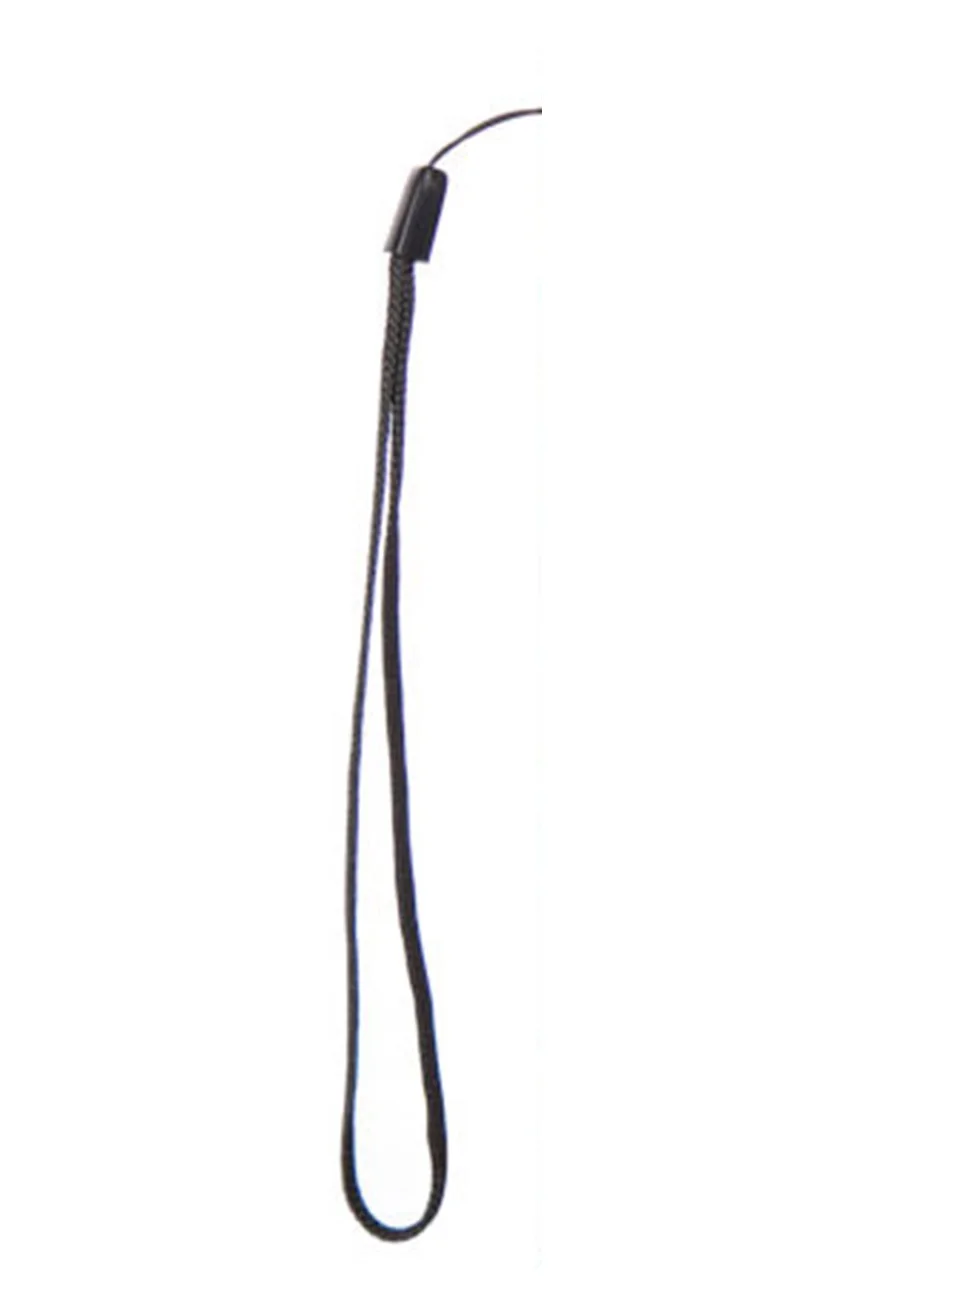 Чехол для TP-Link Neffos C5A C5s N1 y5s X1 Lite C5 Max c7 lte качественный кожаный защитный чехол-книжка для мобильного телефона - Цвет: Strap